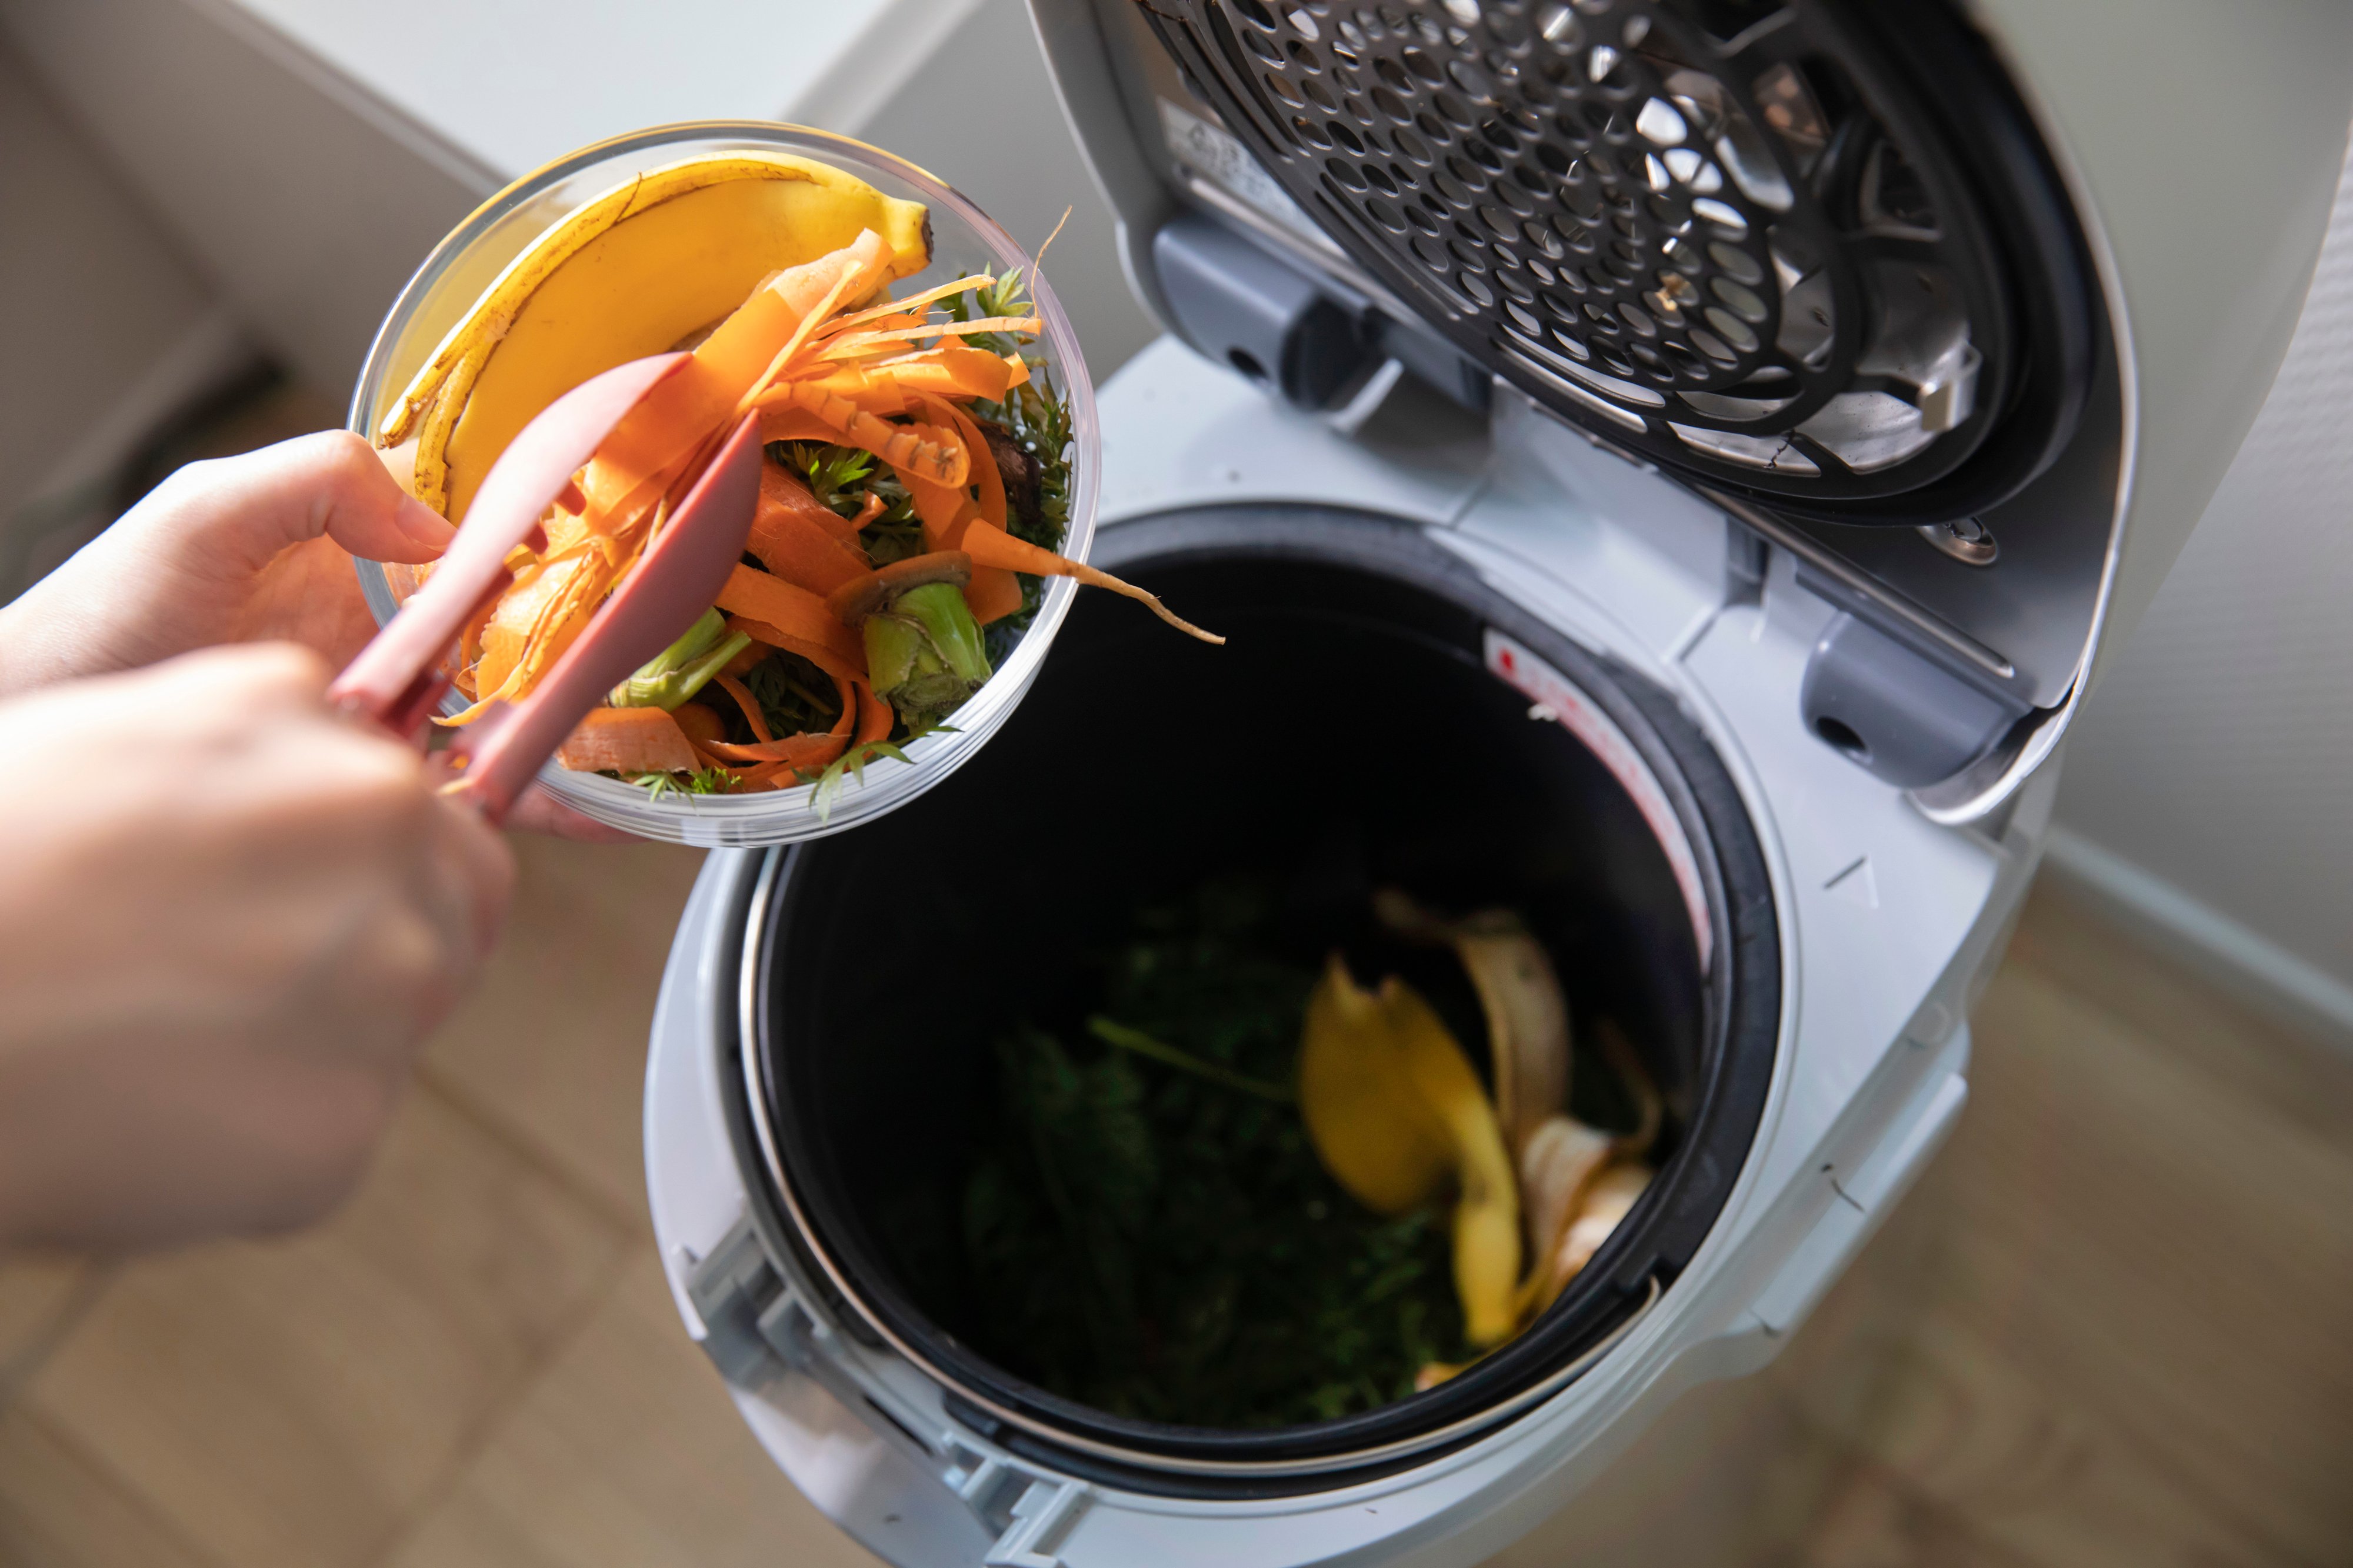 4.キッチンの生ゴミ処理方法④：生ゴミ処理機を置く